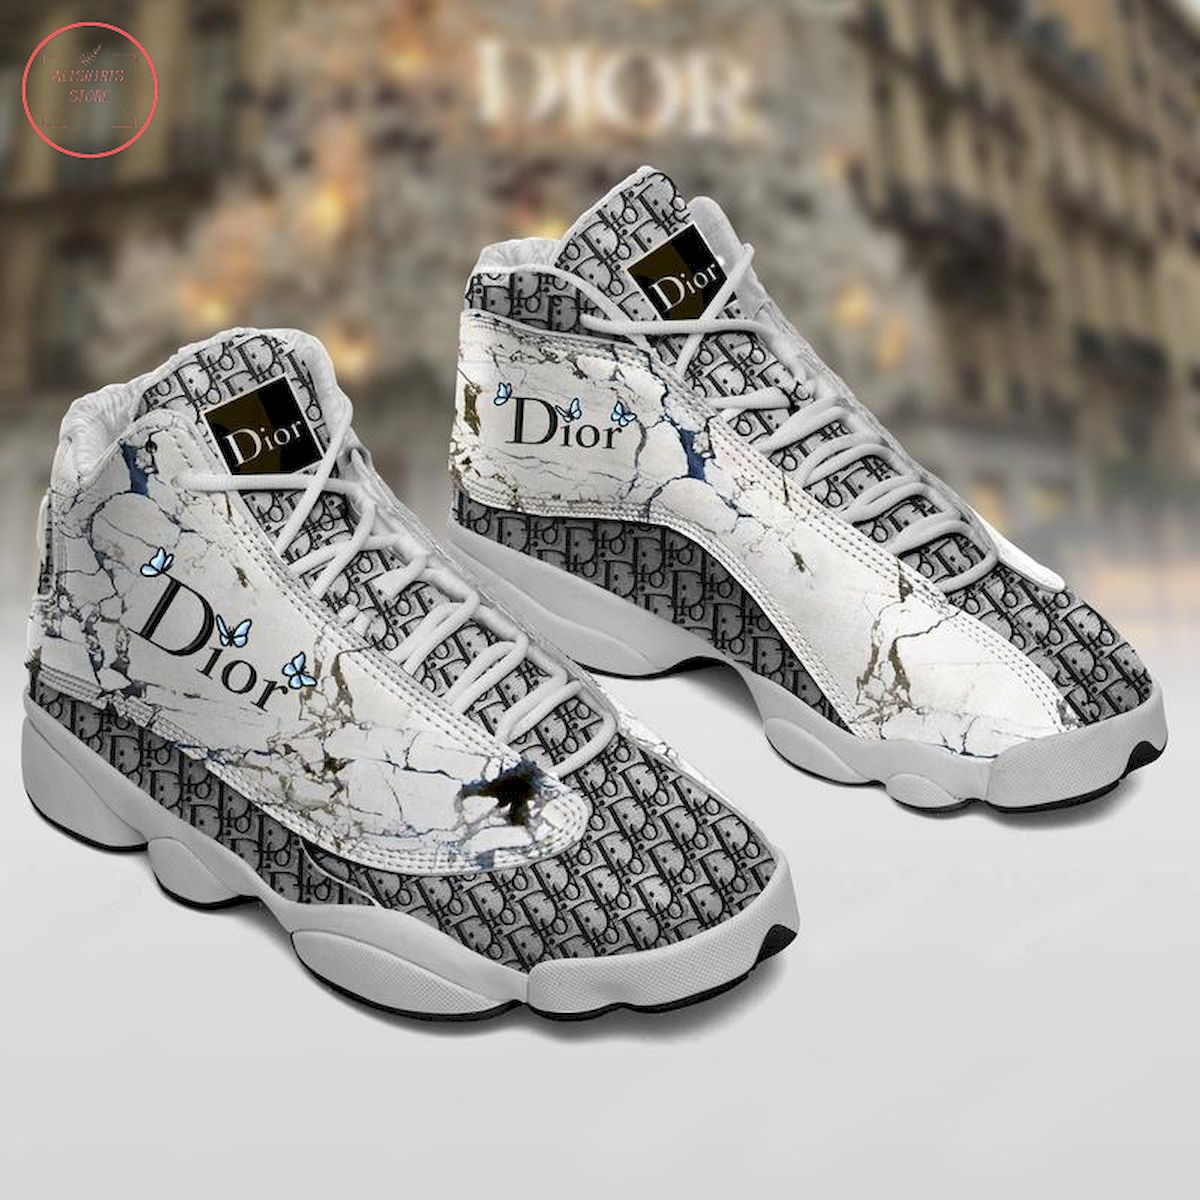 Butterfly Dior Luxury Air Jordan 13 Sneaker